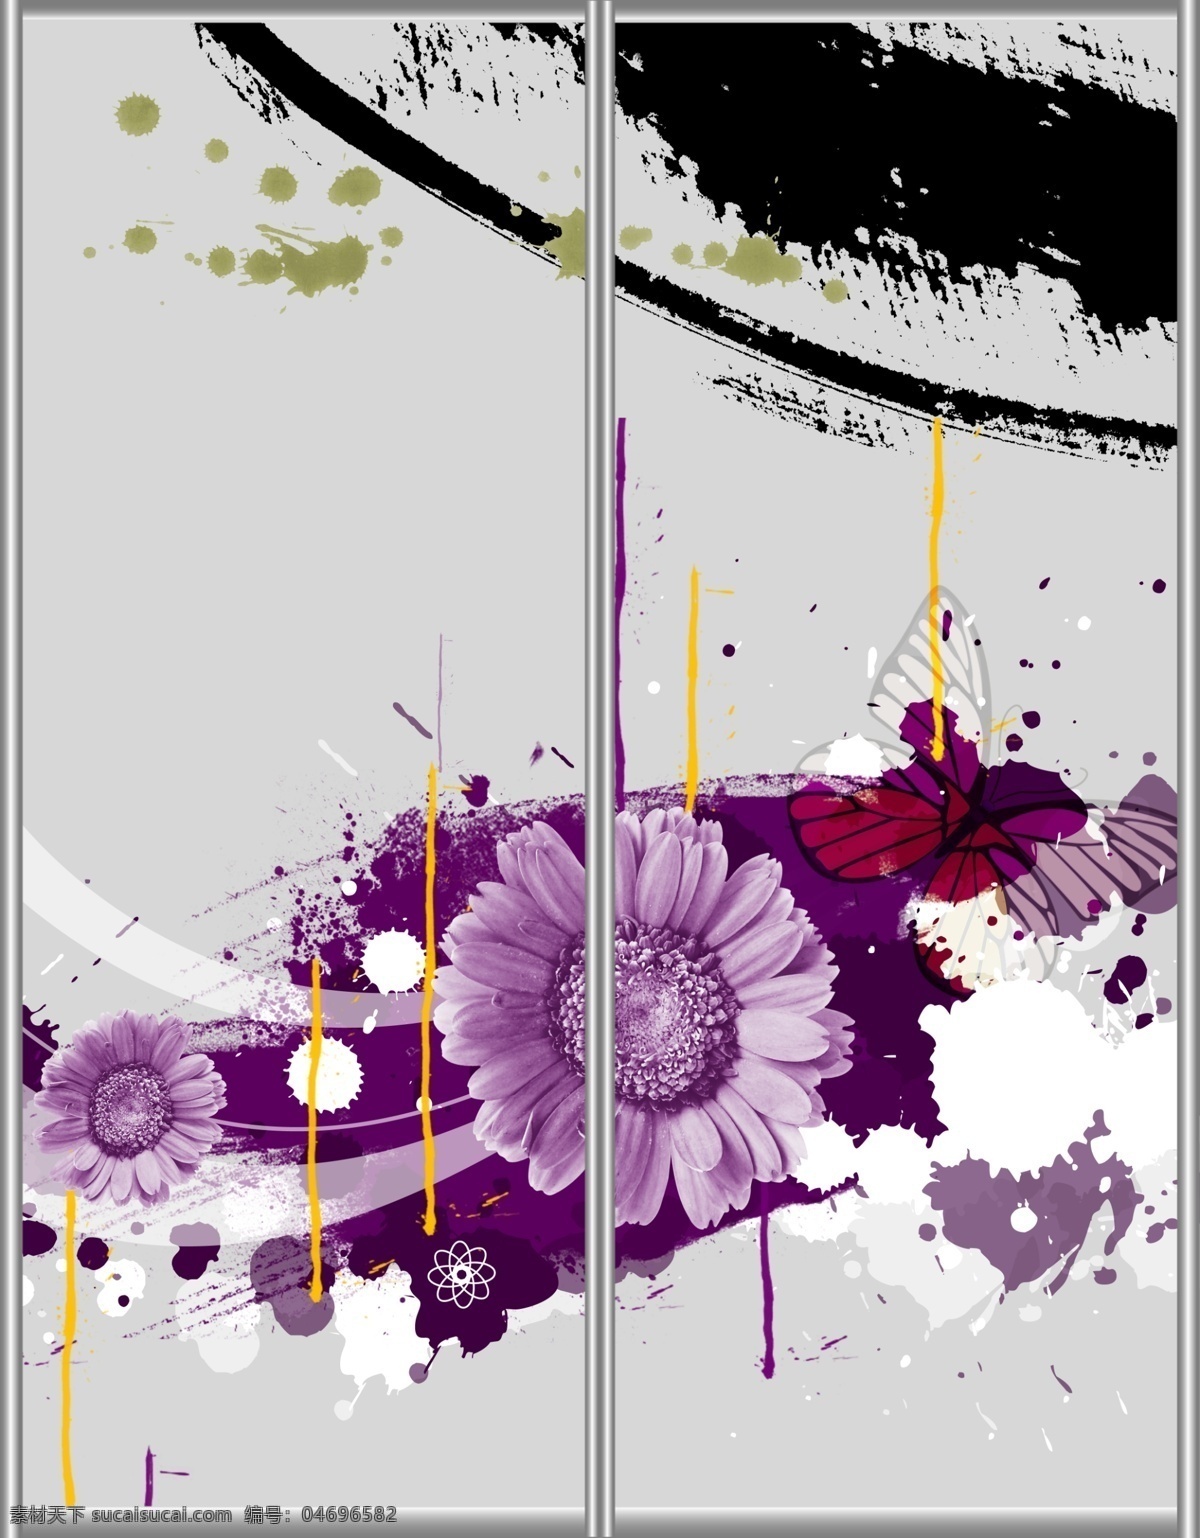 潮流 个性 广告设计模板 花朵 花纹 菊花 墨迹 圈圈 移门 图案 模板下载 移门图案 移门汇 移门图 水墨 紫色 线条 源文件